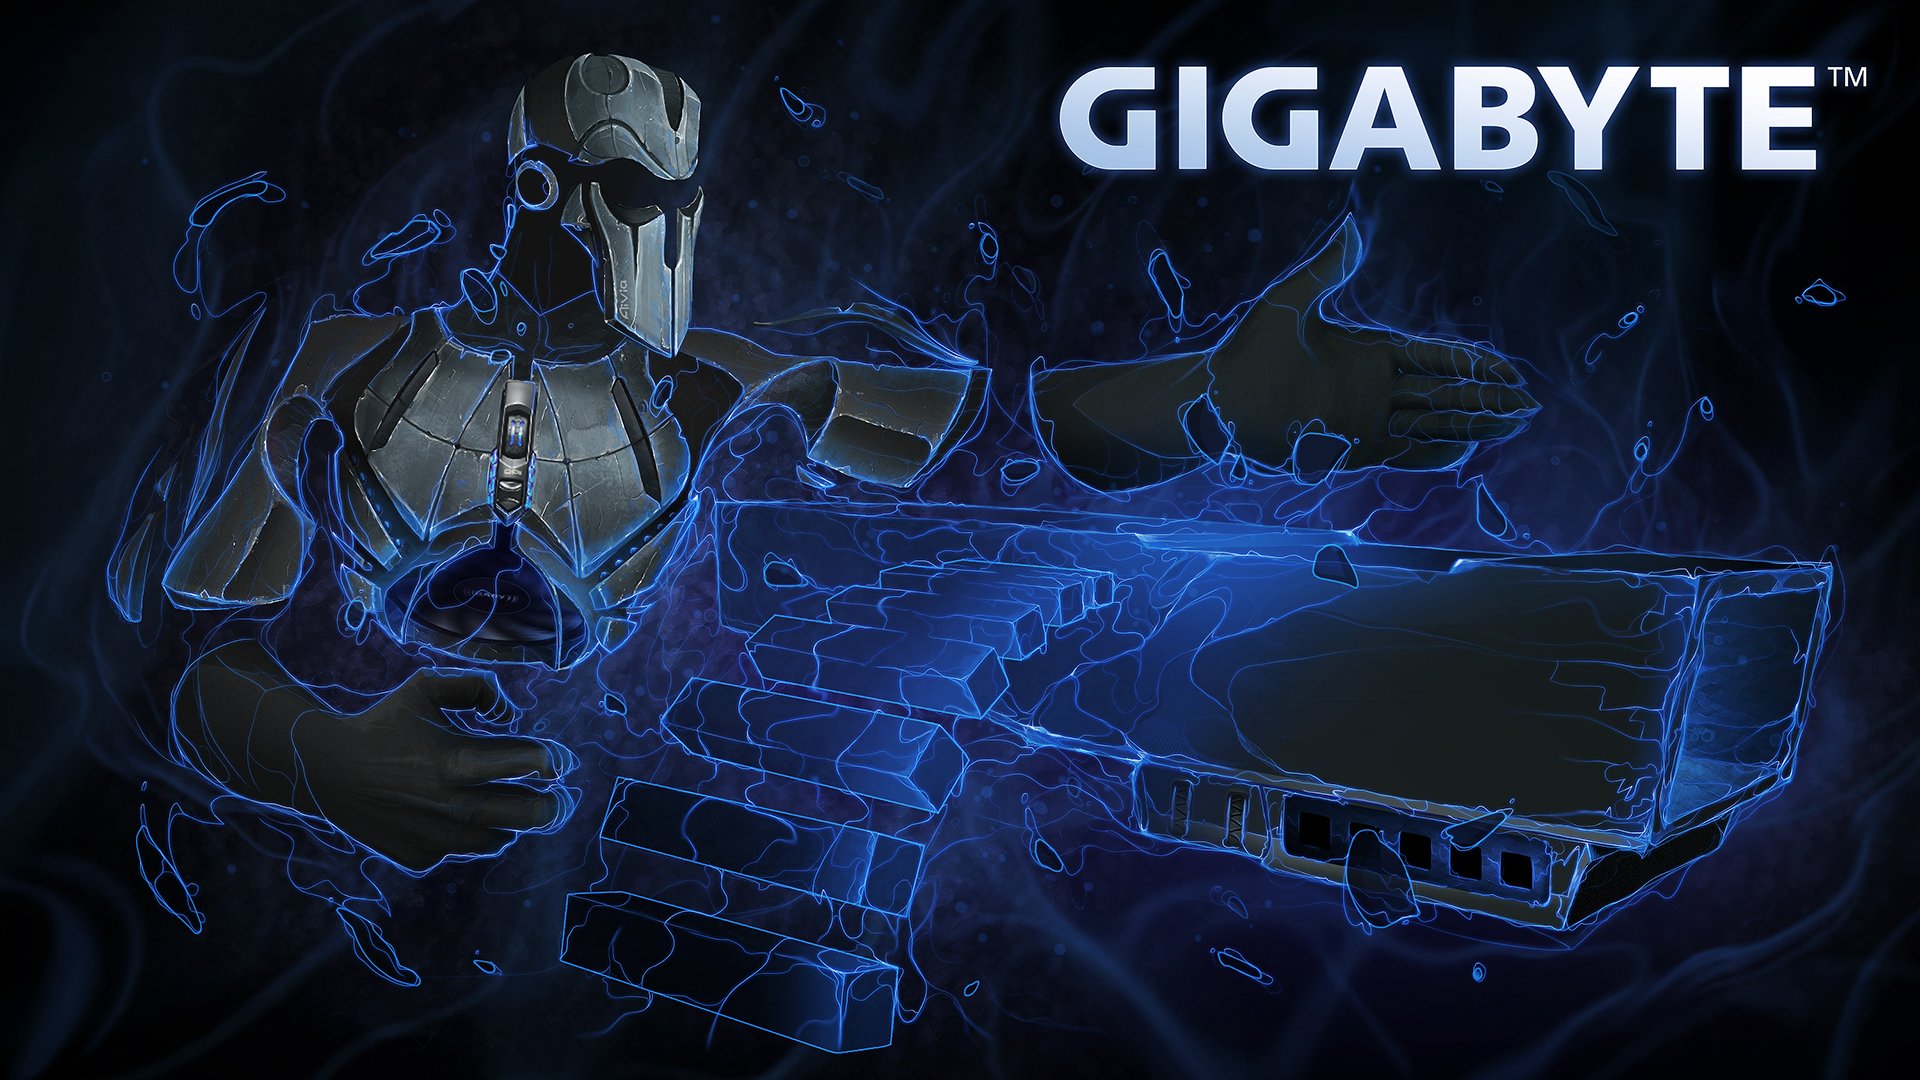 Gigabyte Gaming HD wallpaper  Pxfuel